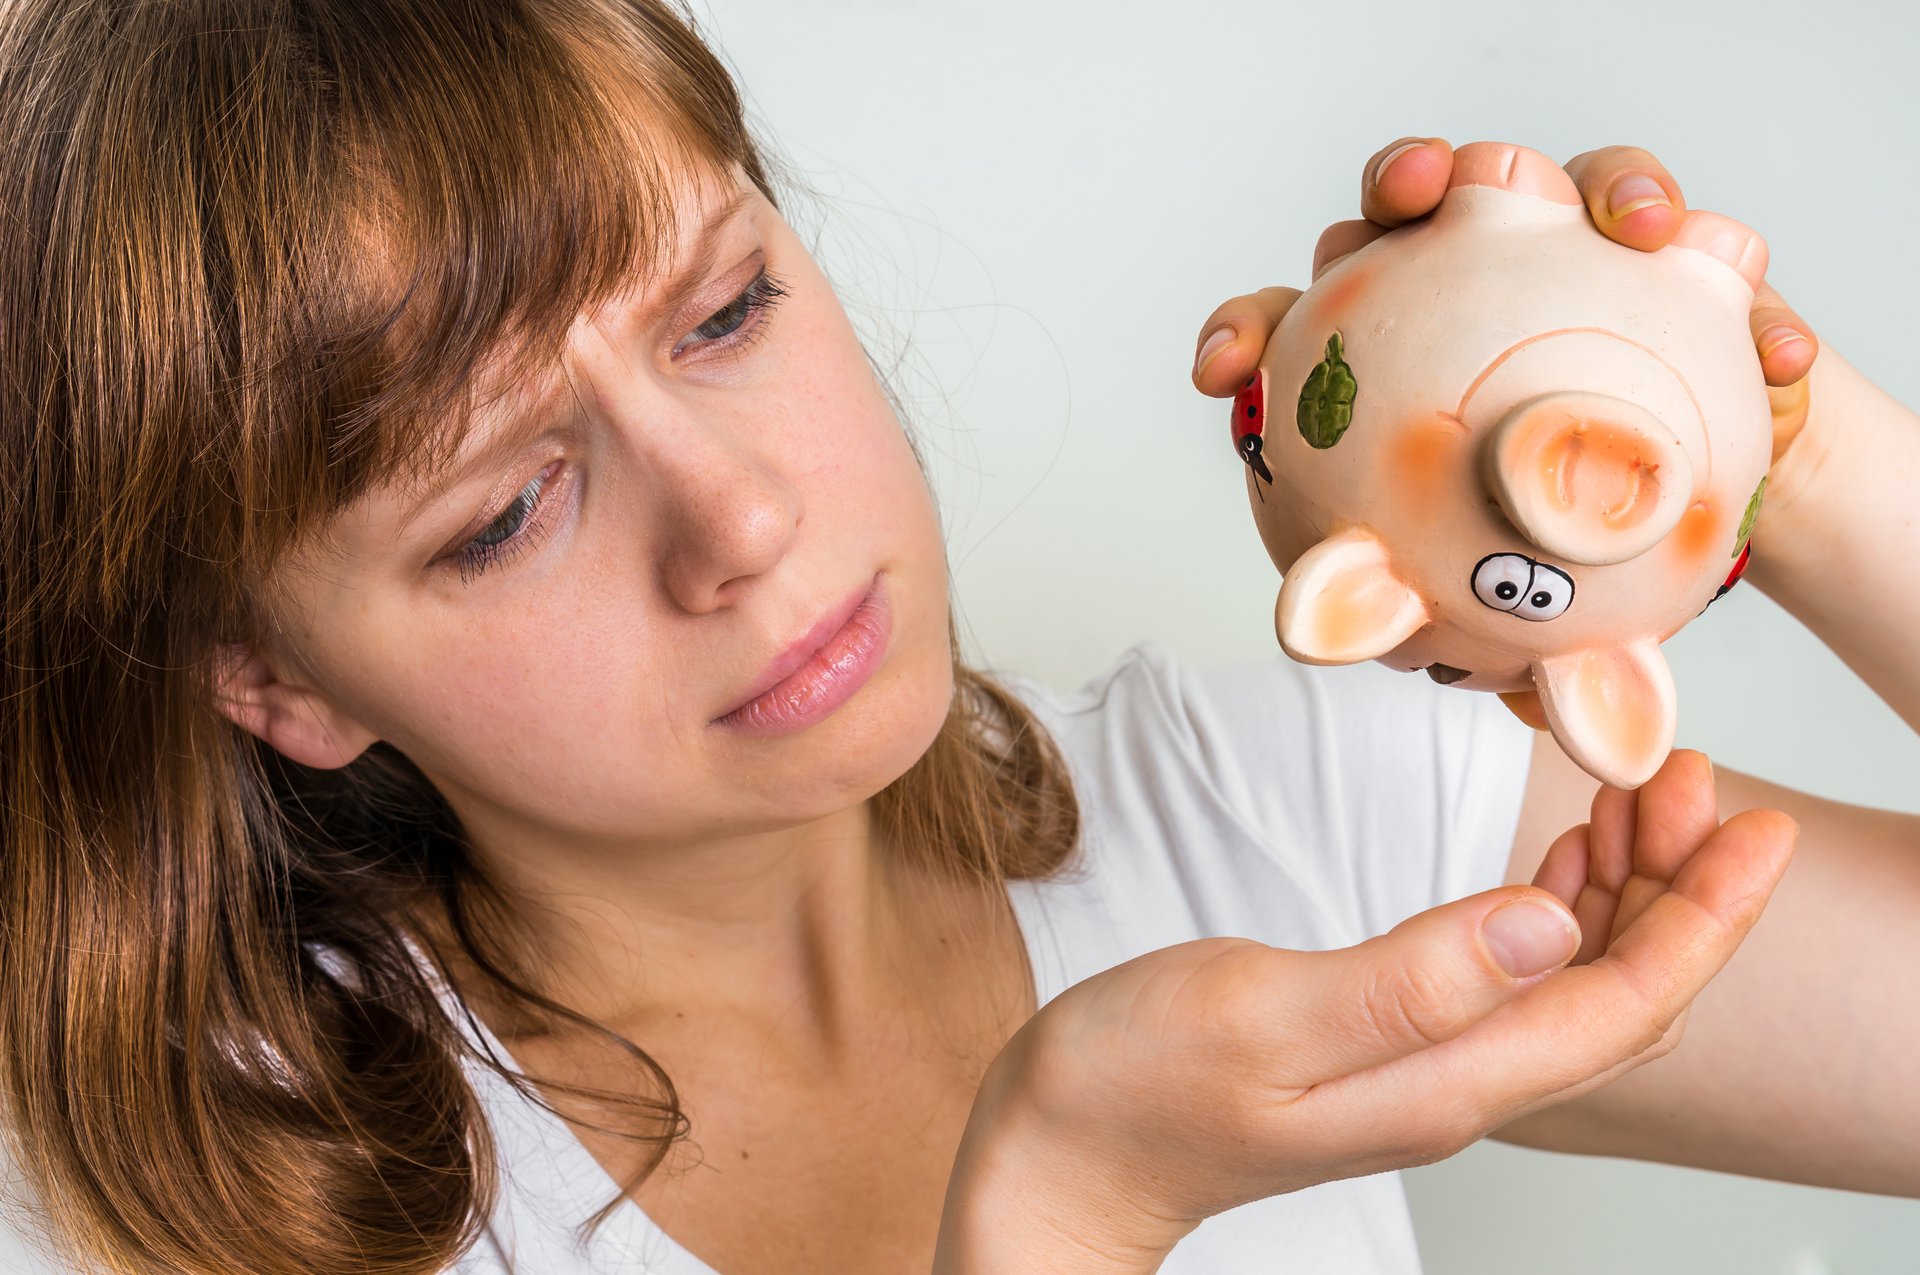 A woman holds a piggy bank upside down